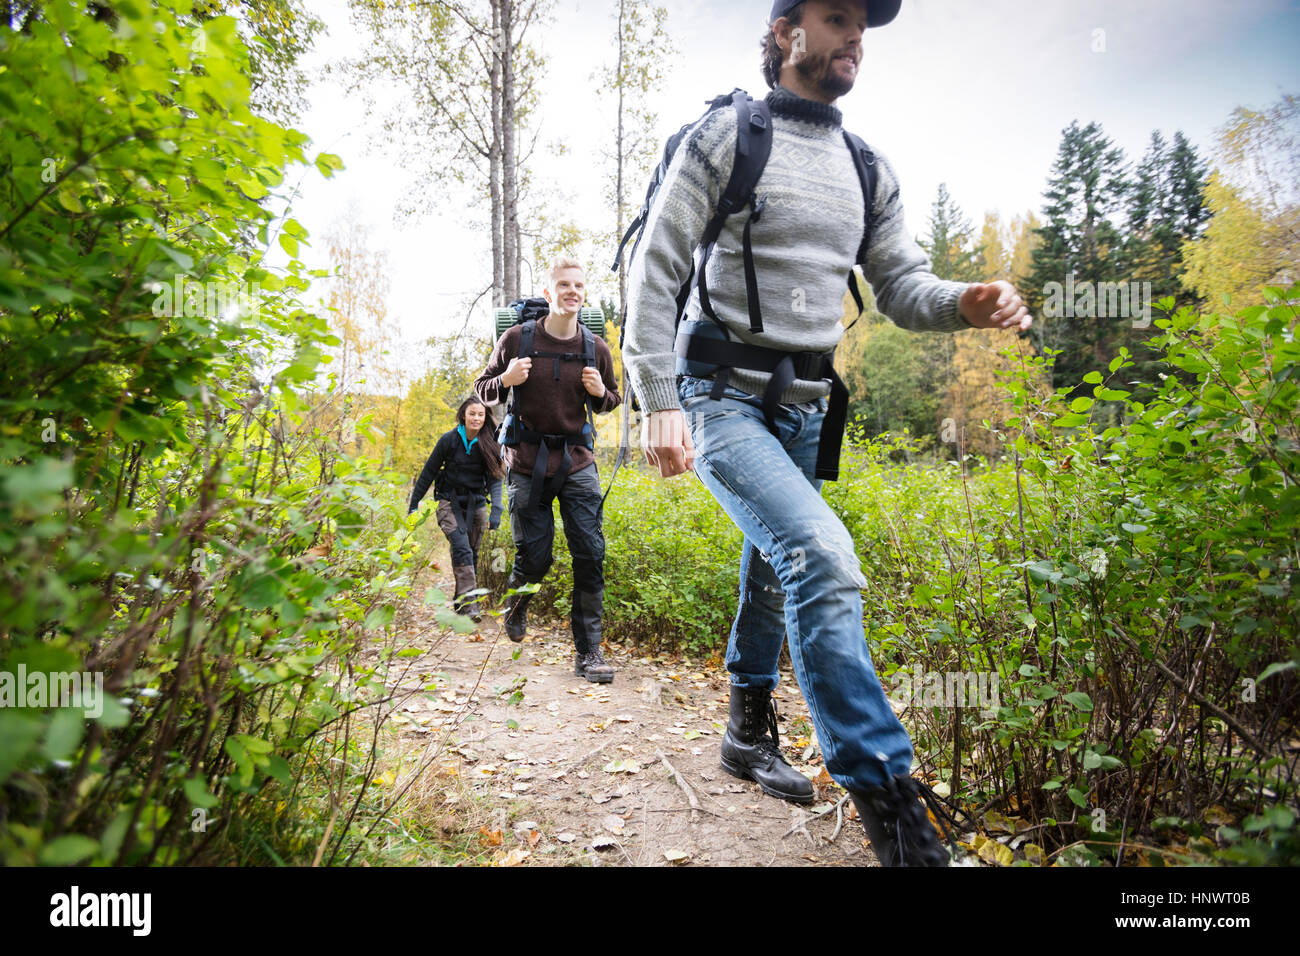 Jeune homme avec les amis de la randonnée sur sentier forestier Banque D'Images